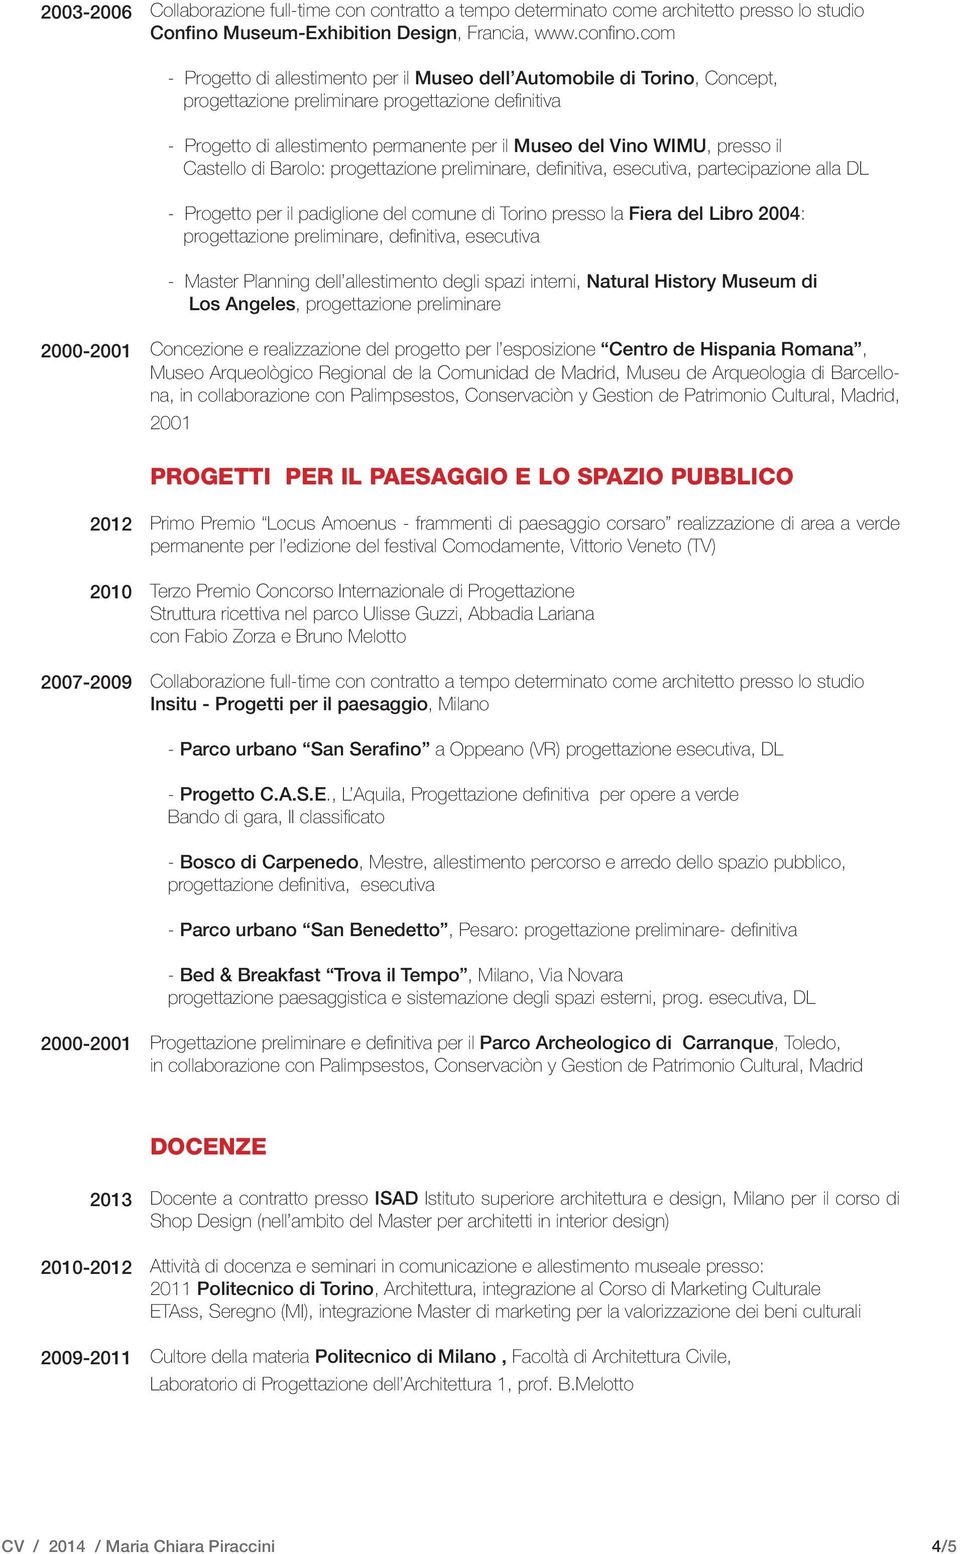 presso il Castello di Barolo: progettazione preliminare, definitiva, esecutiva, partecipazione alla DL - Progetto per il padiglione del comune di Torino presso la Fiera del Libro 2004: progettazione